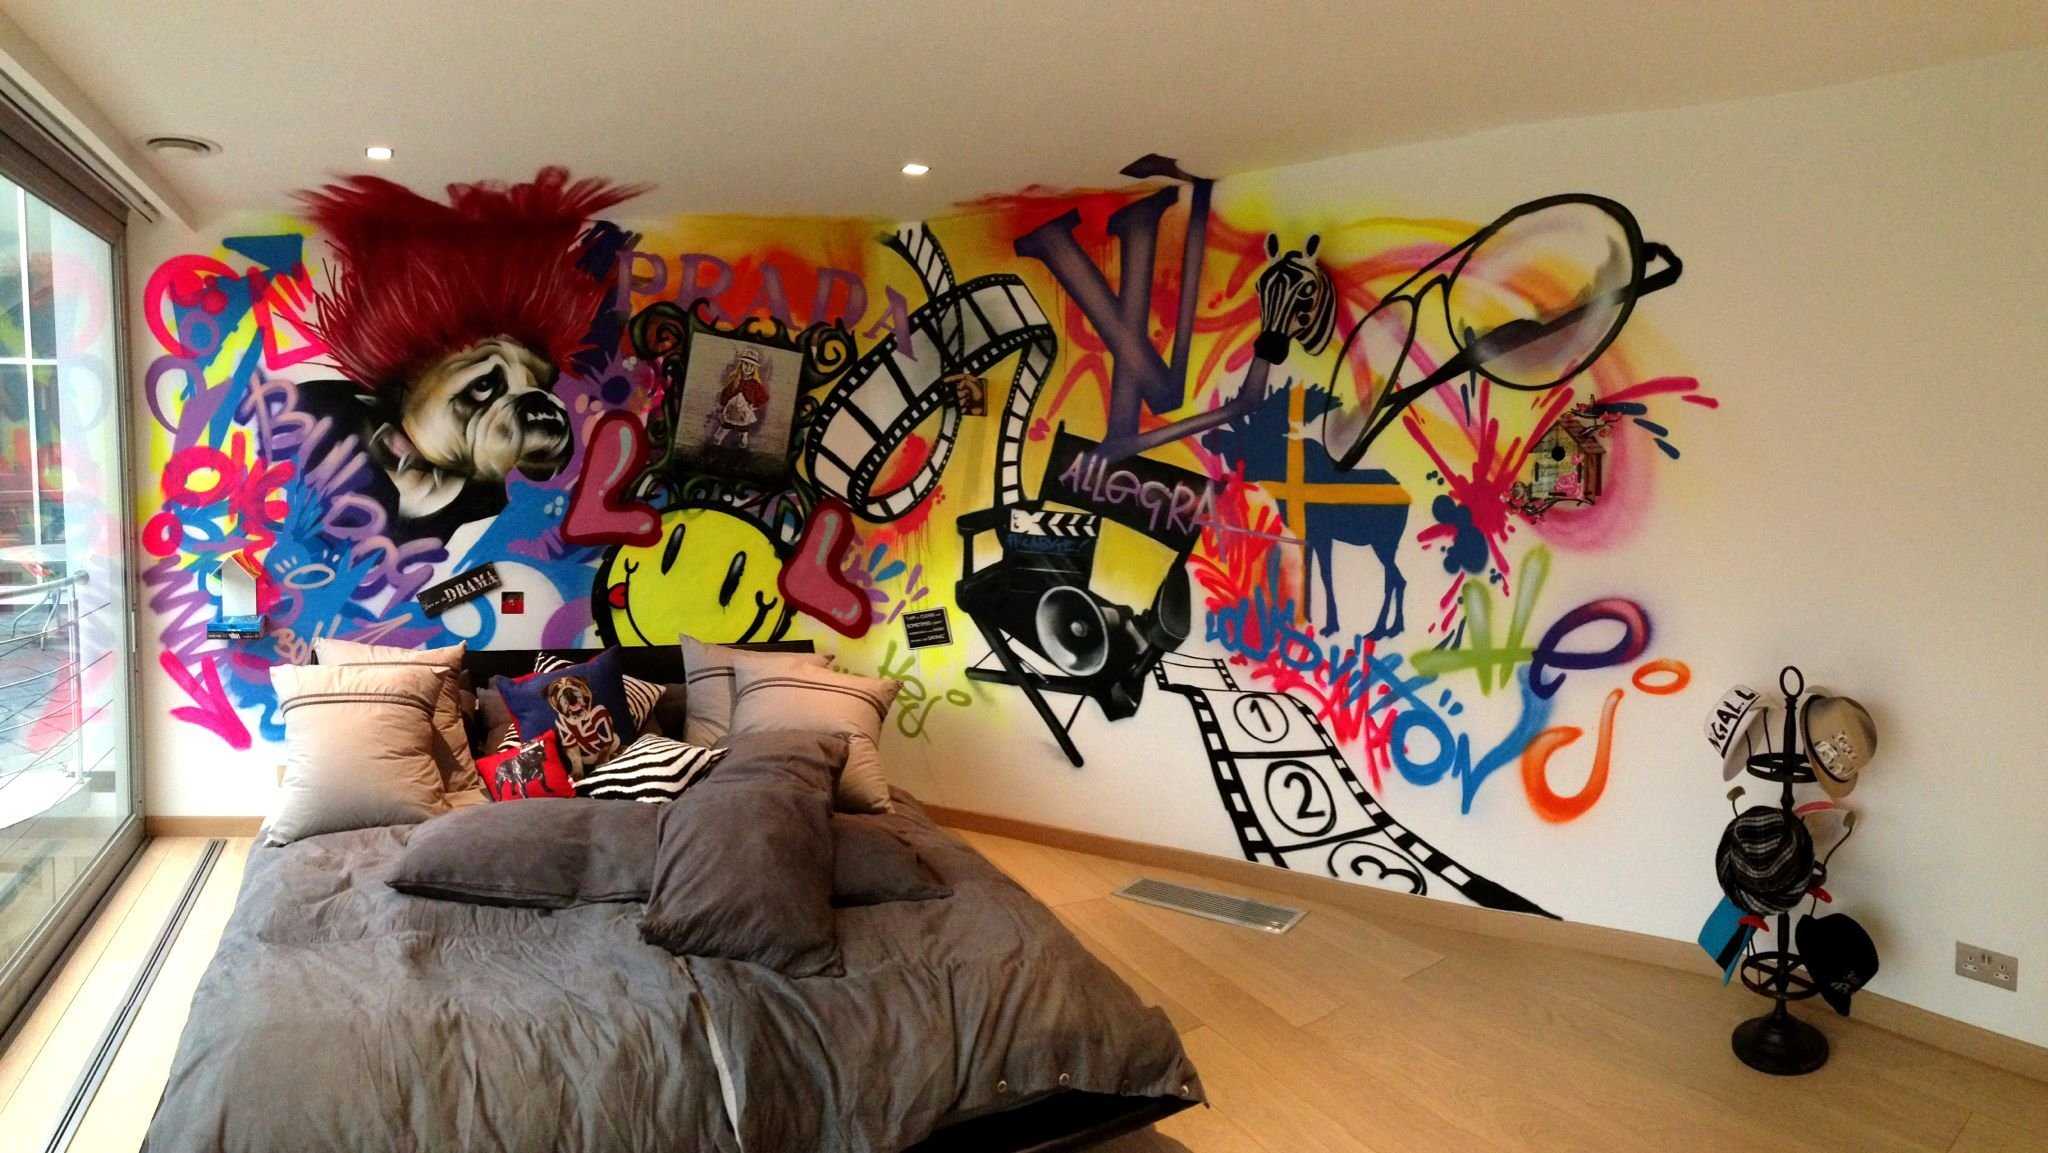 Граффити в интерьере в виде обоев или фотообоев современной квартиры или частного дома.